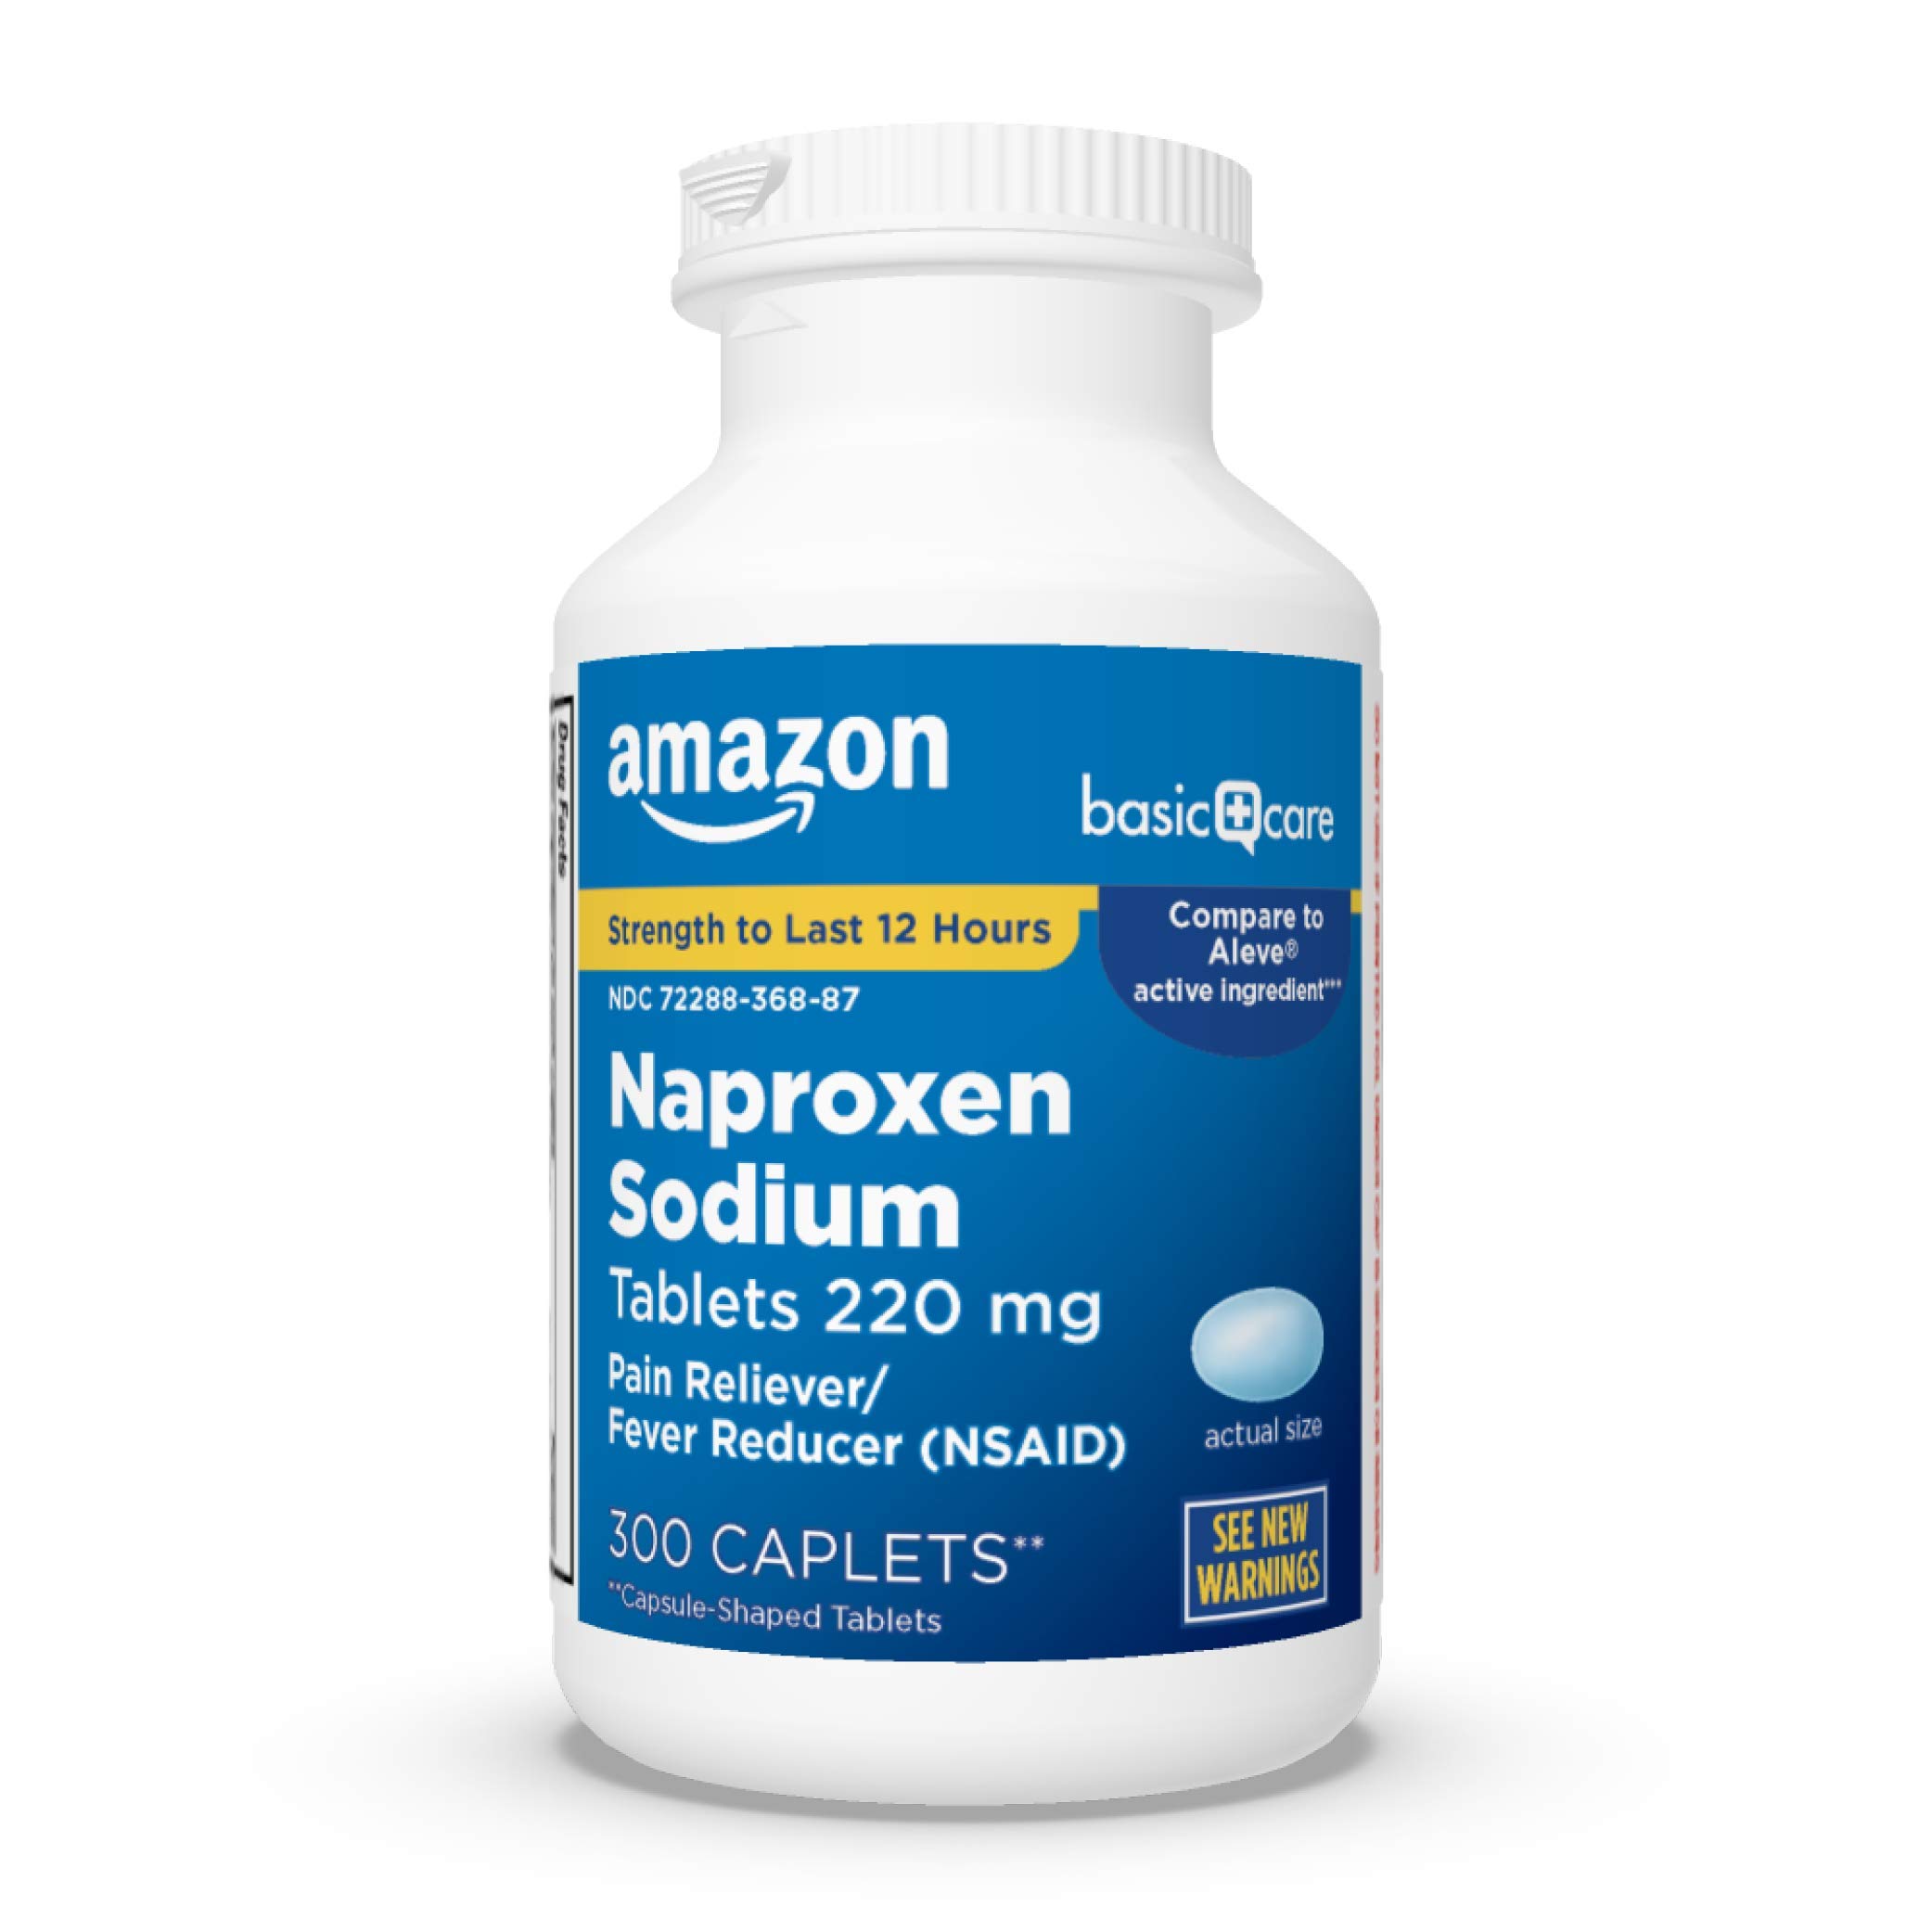 Amazon Basic Care Naproxen Sodium Tablets 220 mg